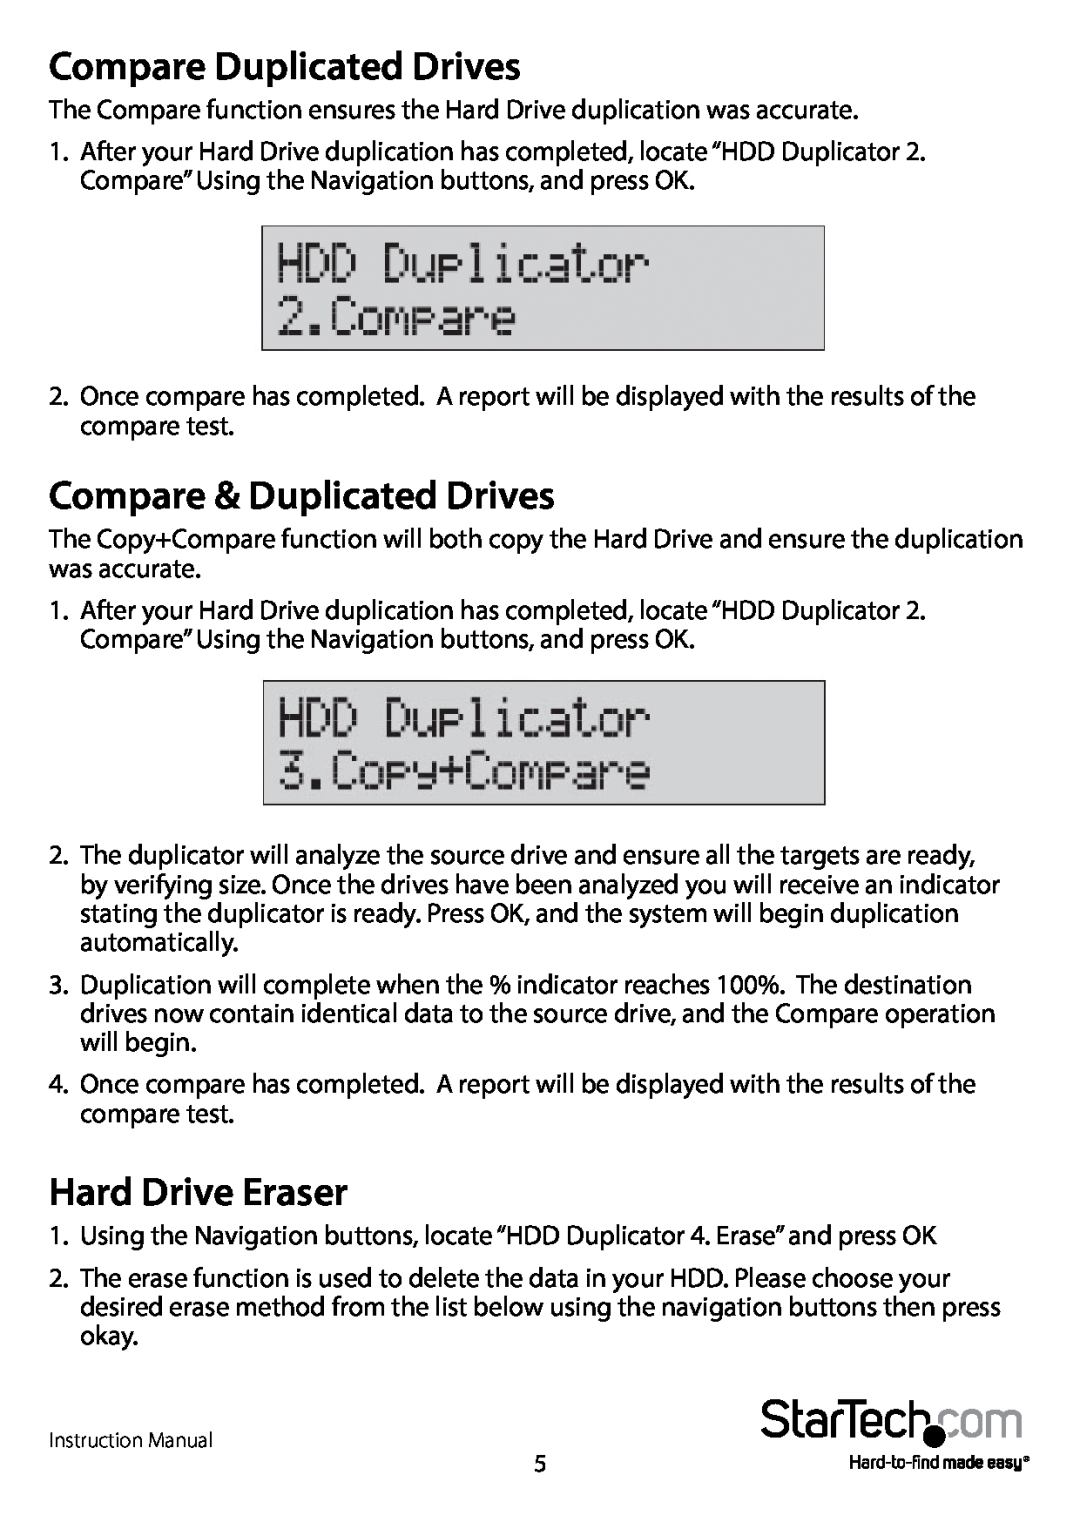 StarTech.com SATDUP13 manual Compare Duplicated Drives, Compare & Duplicated Drives, Hard Drive Eraser 